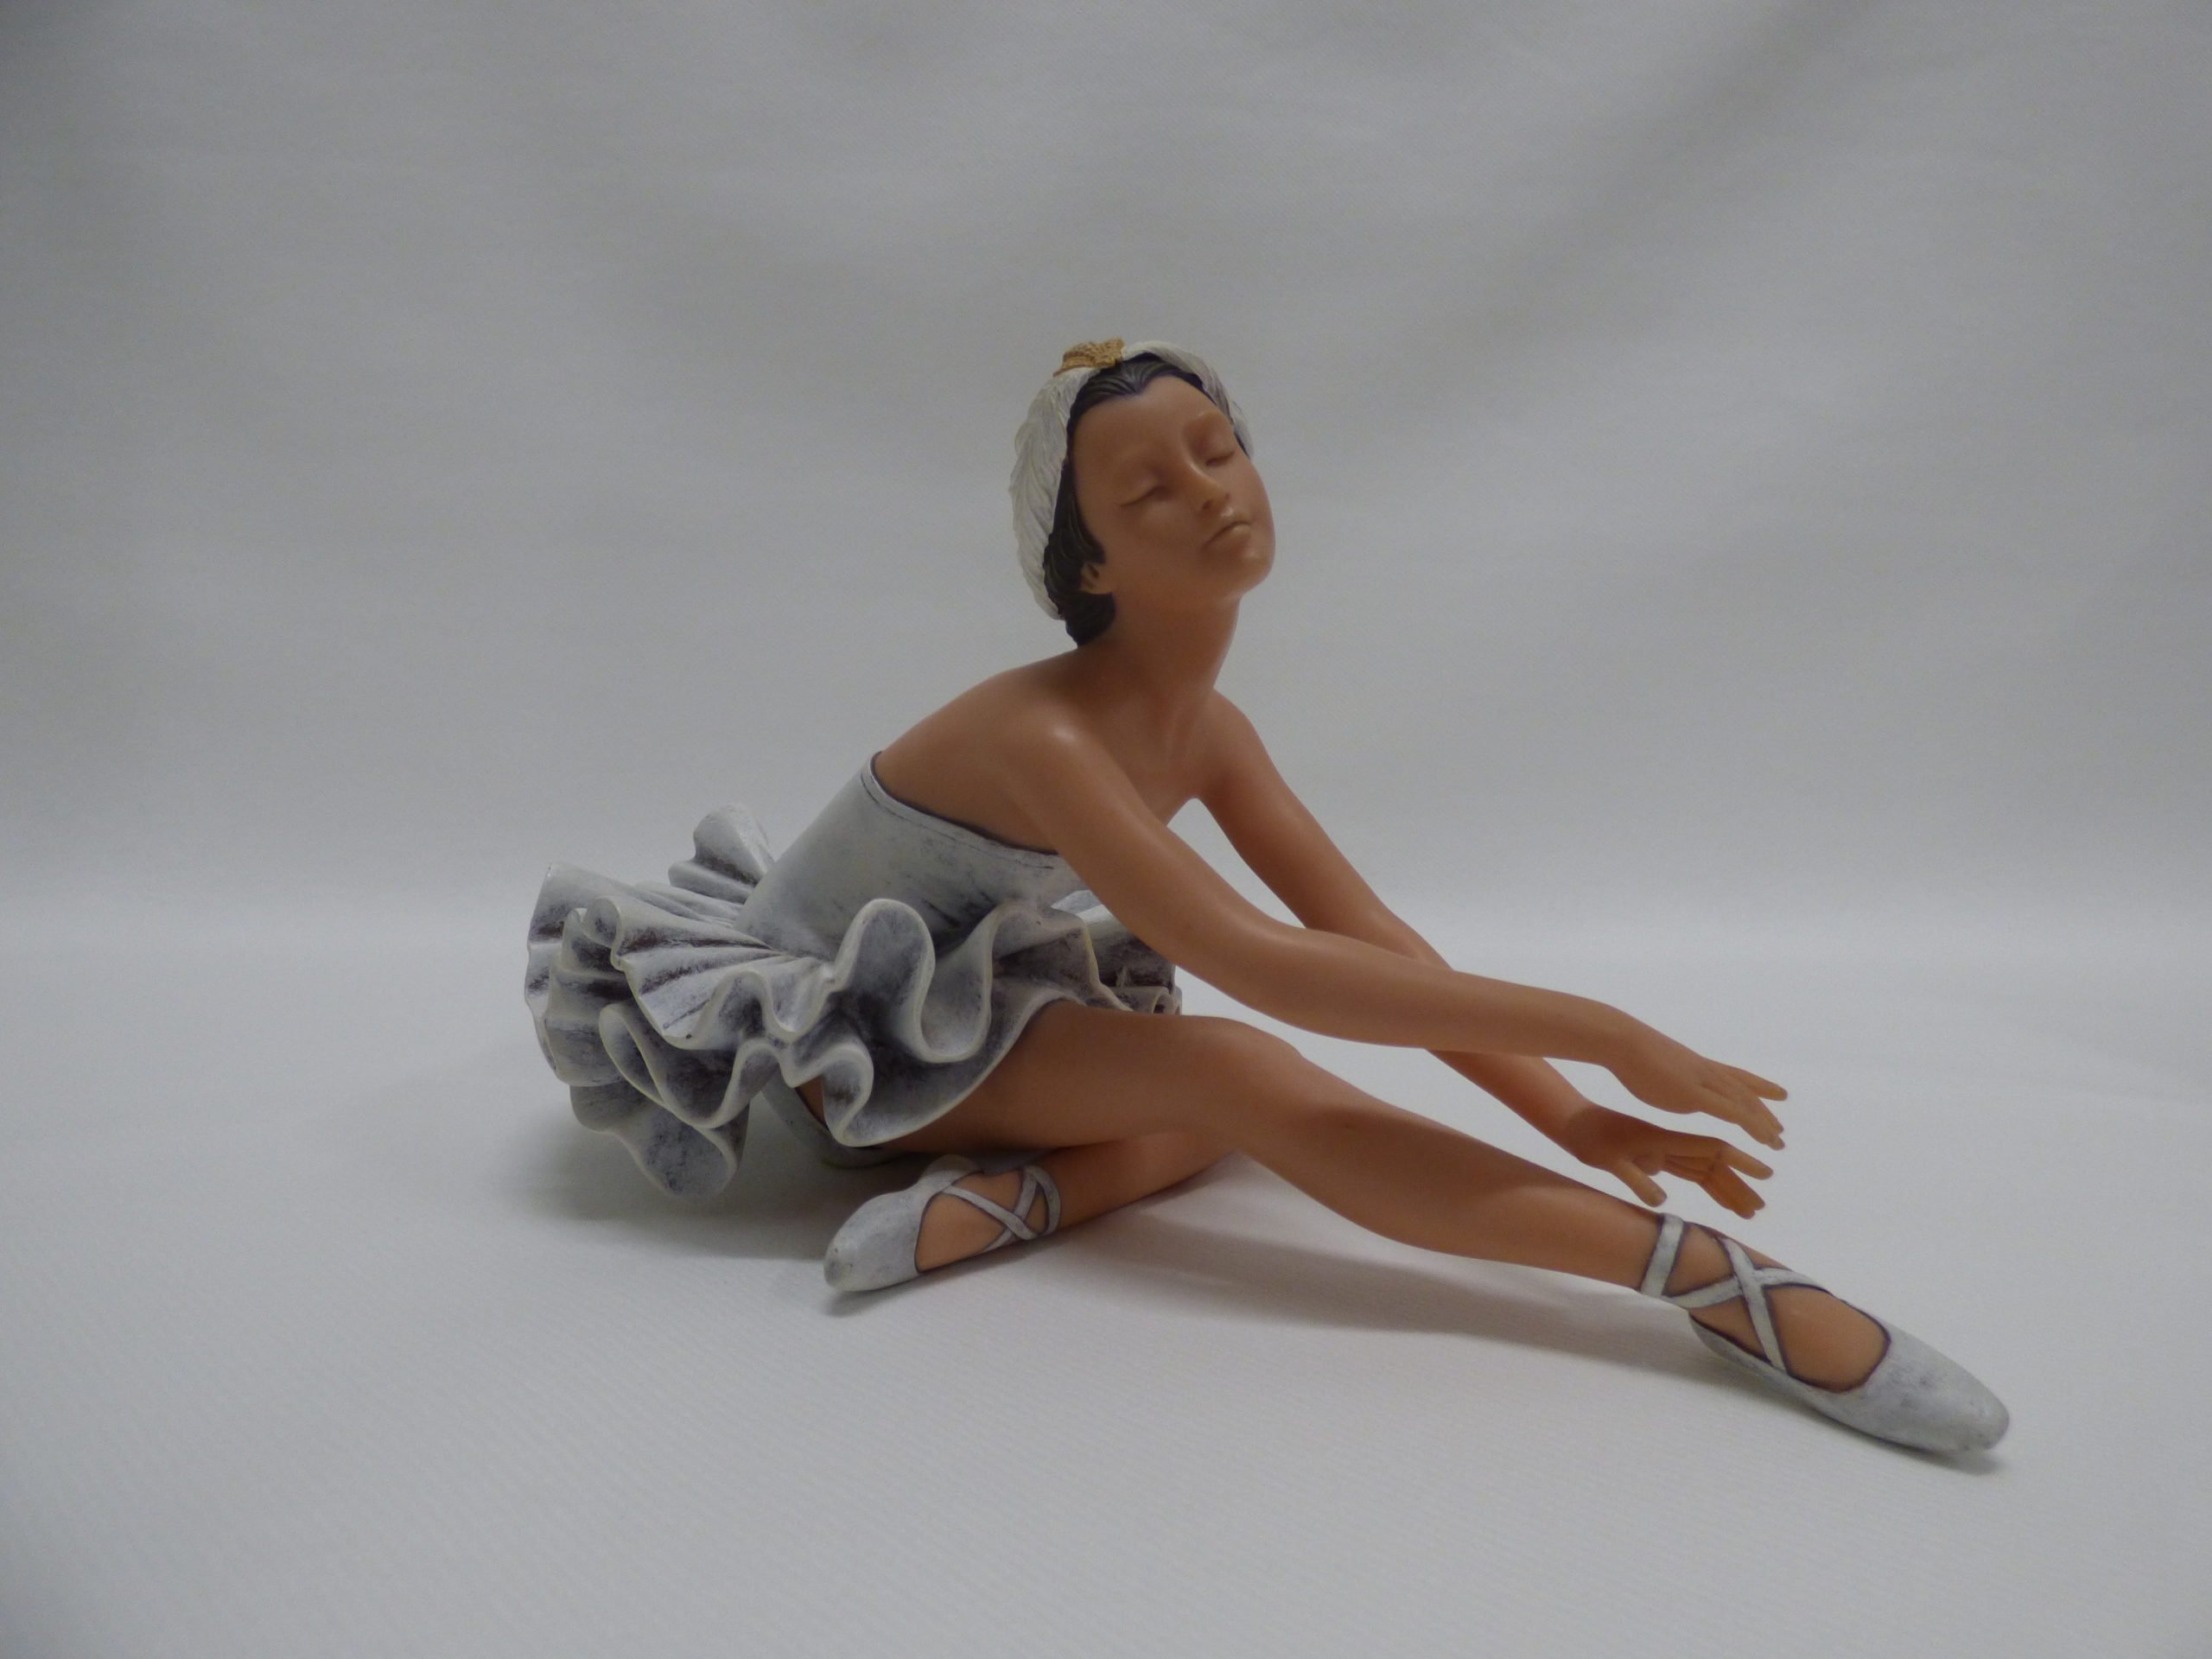 Tag ud Modsige pris Ballerina figur - Aukt.nr. SGA-199 - Genbrugsauktion